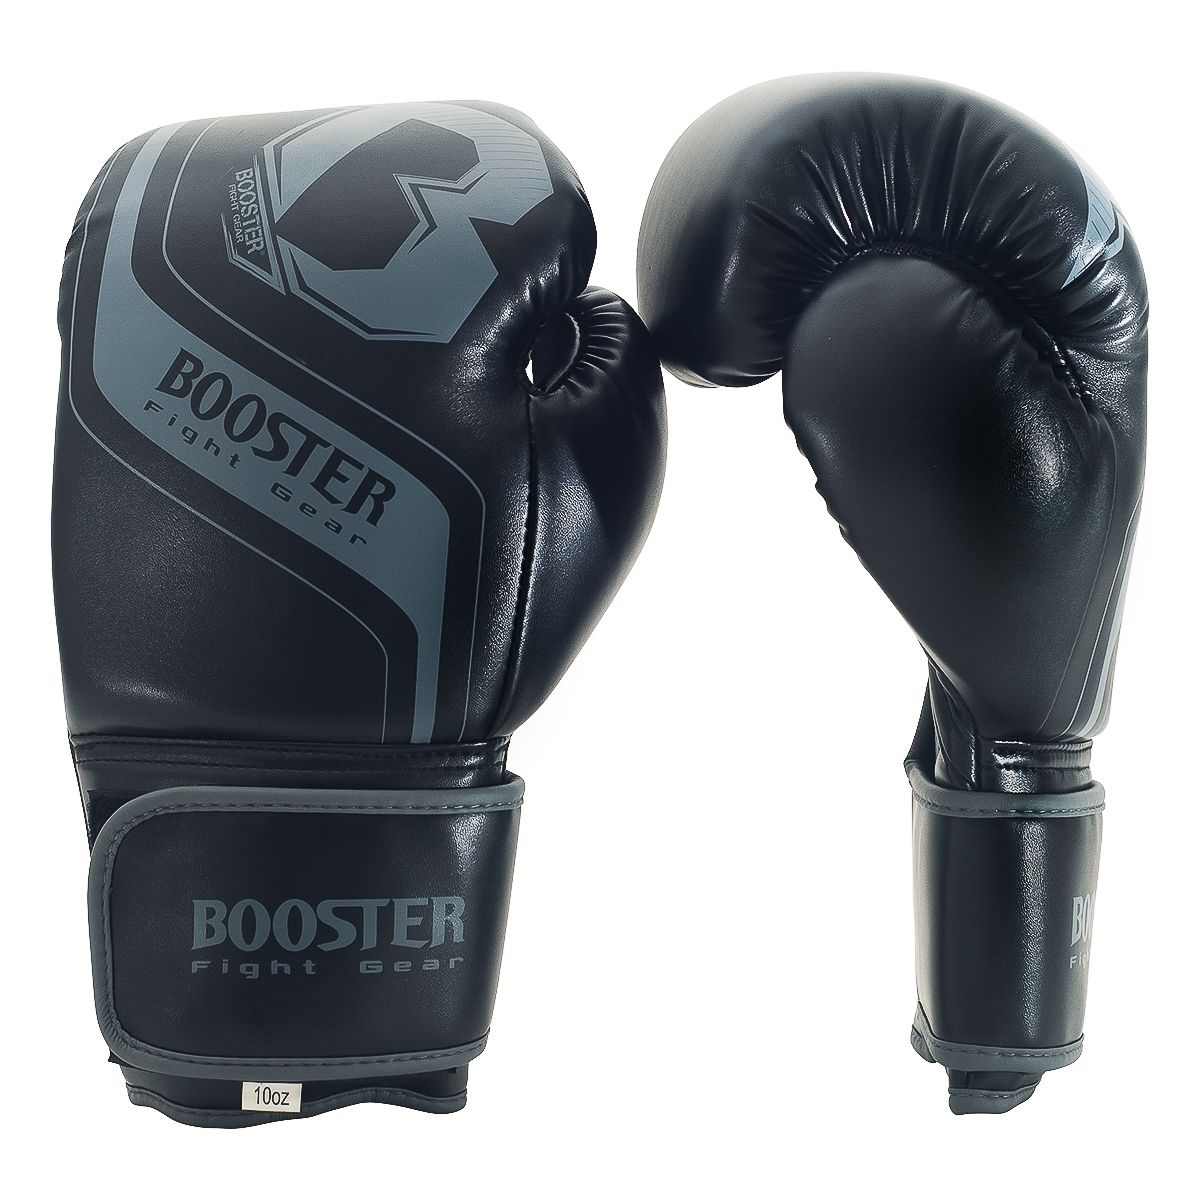 Booster Fight Gear Enforcer: Zwart-Grijze Bokshandschoenen Voor Beginners